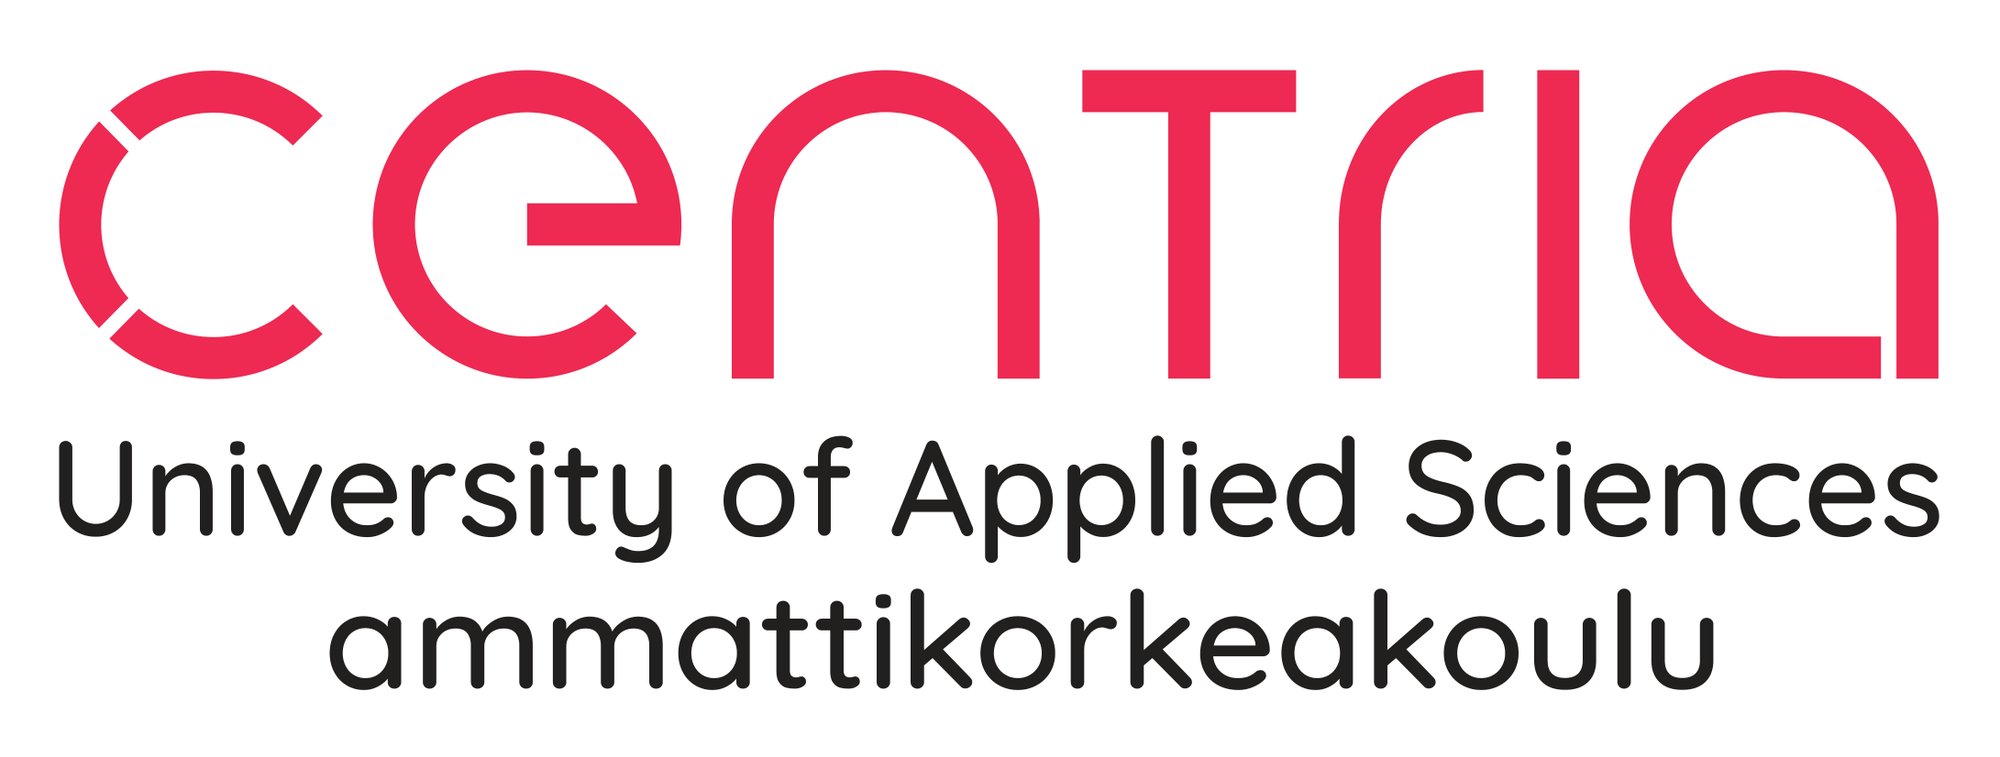 Centria logo_2